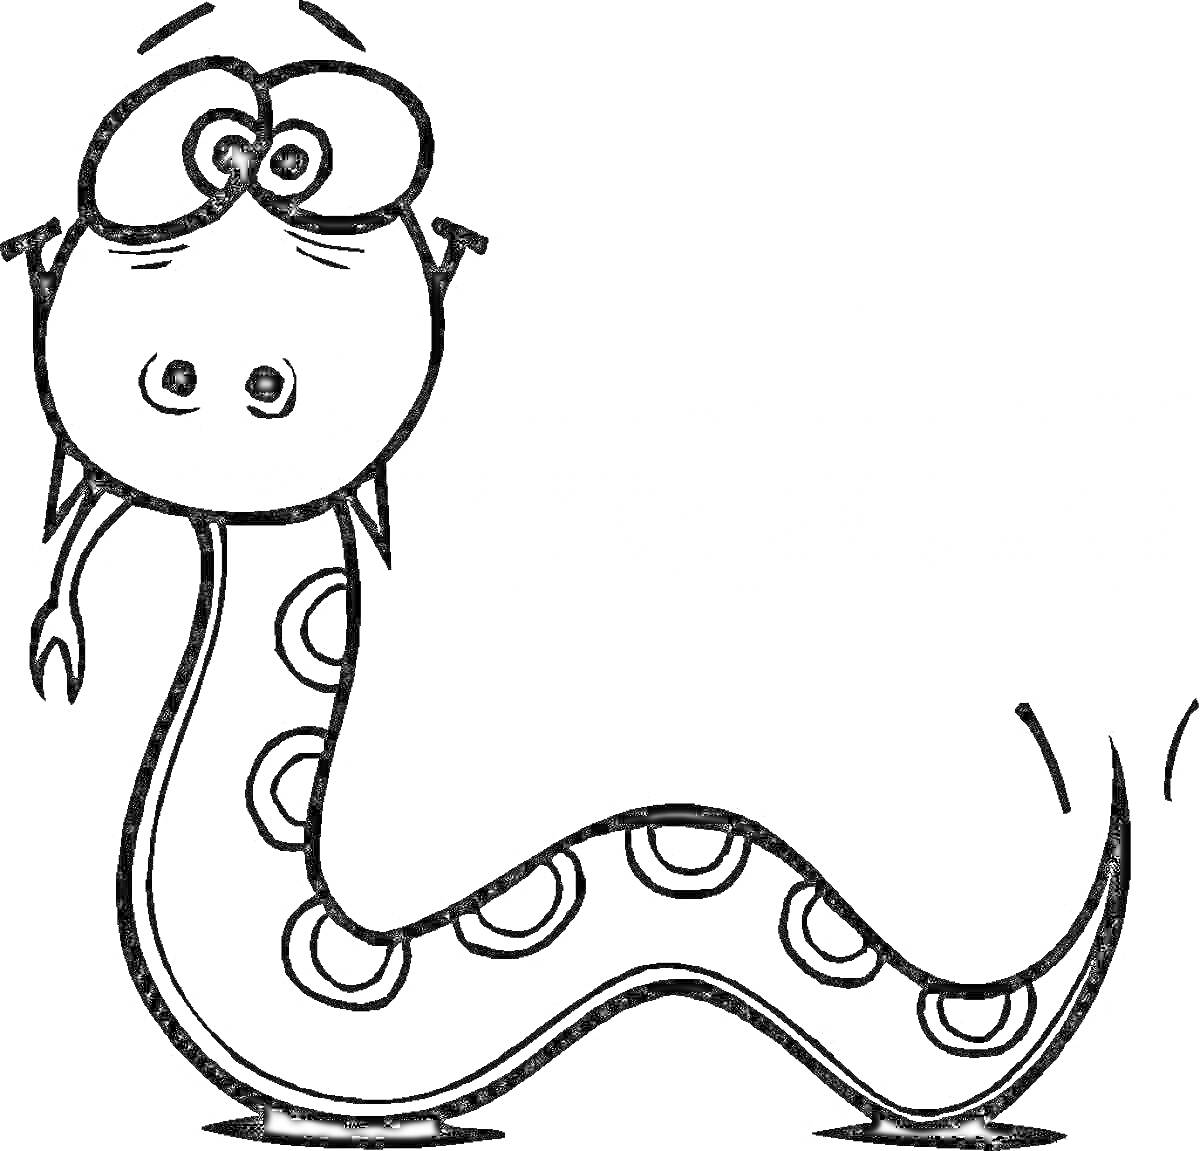 Раскраска Змейка с большими глазами и узорами в виде колец на теле